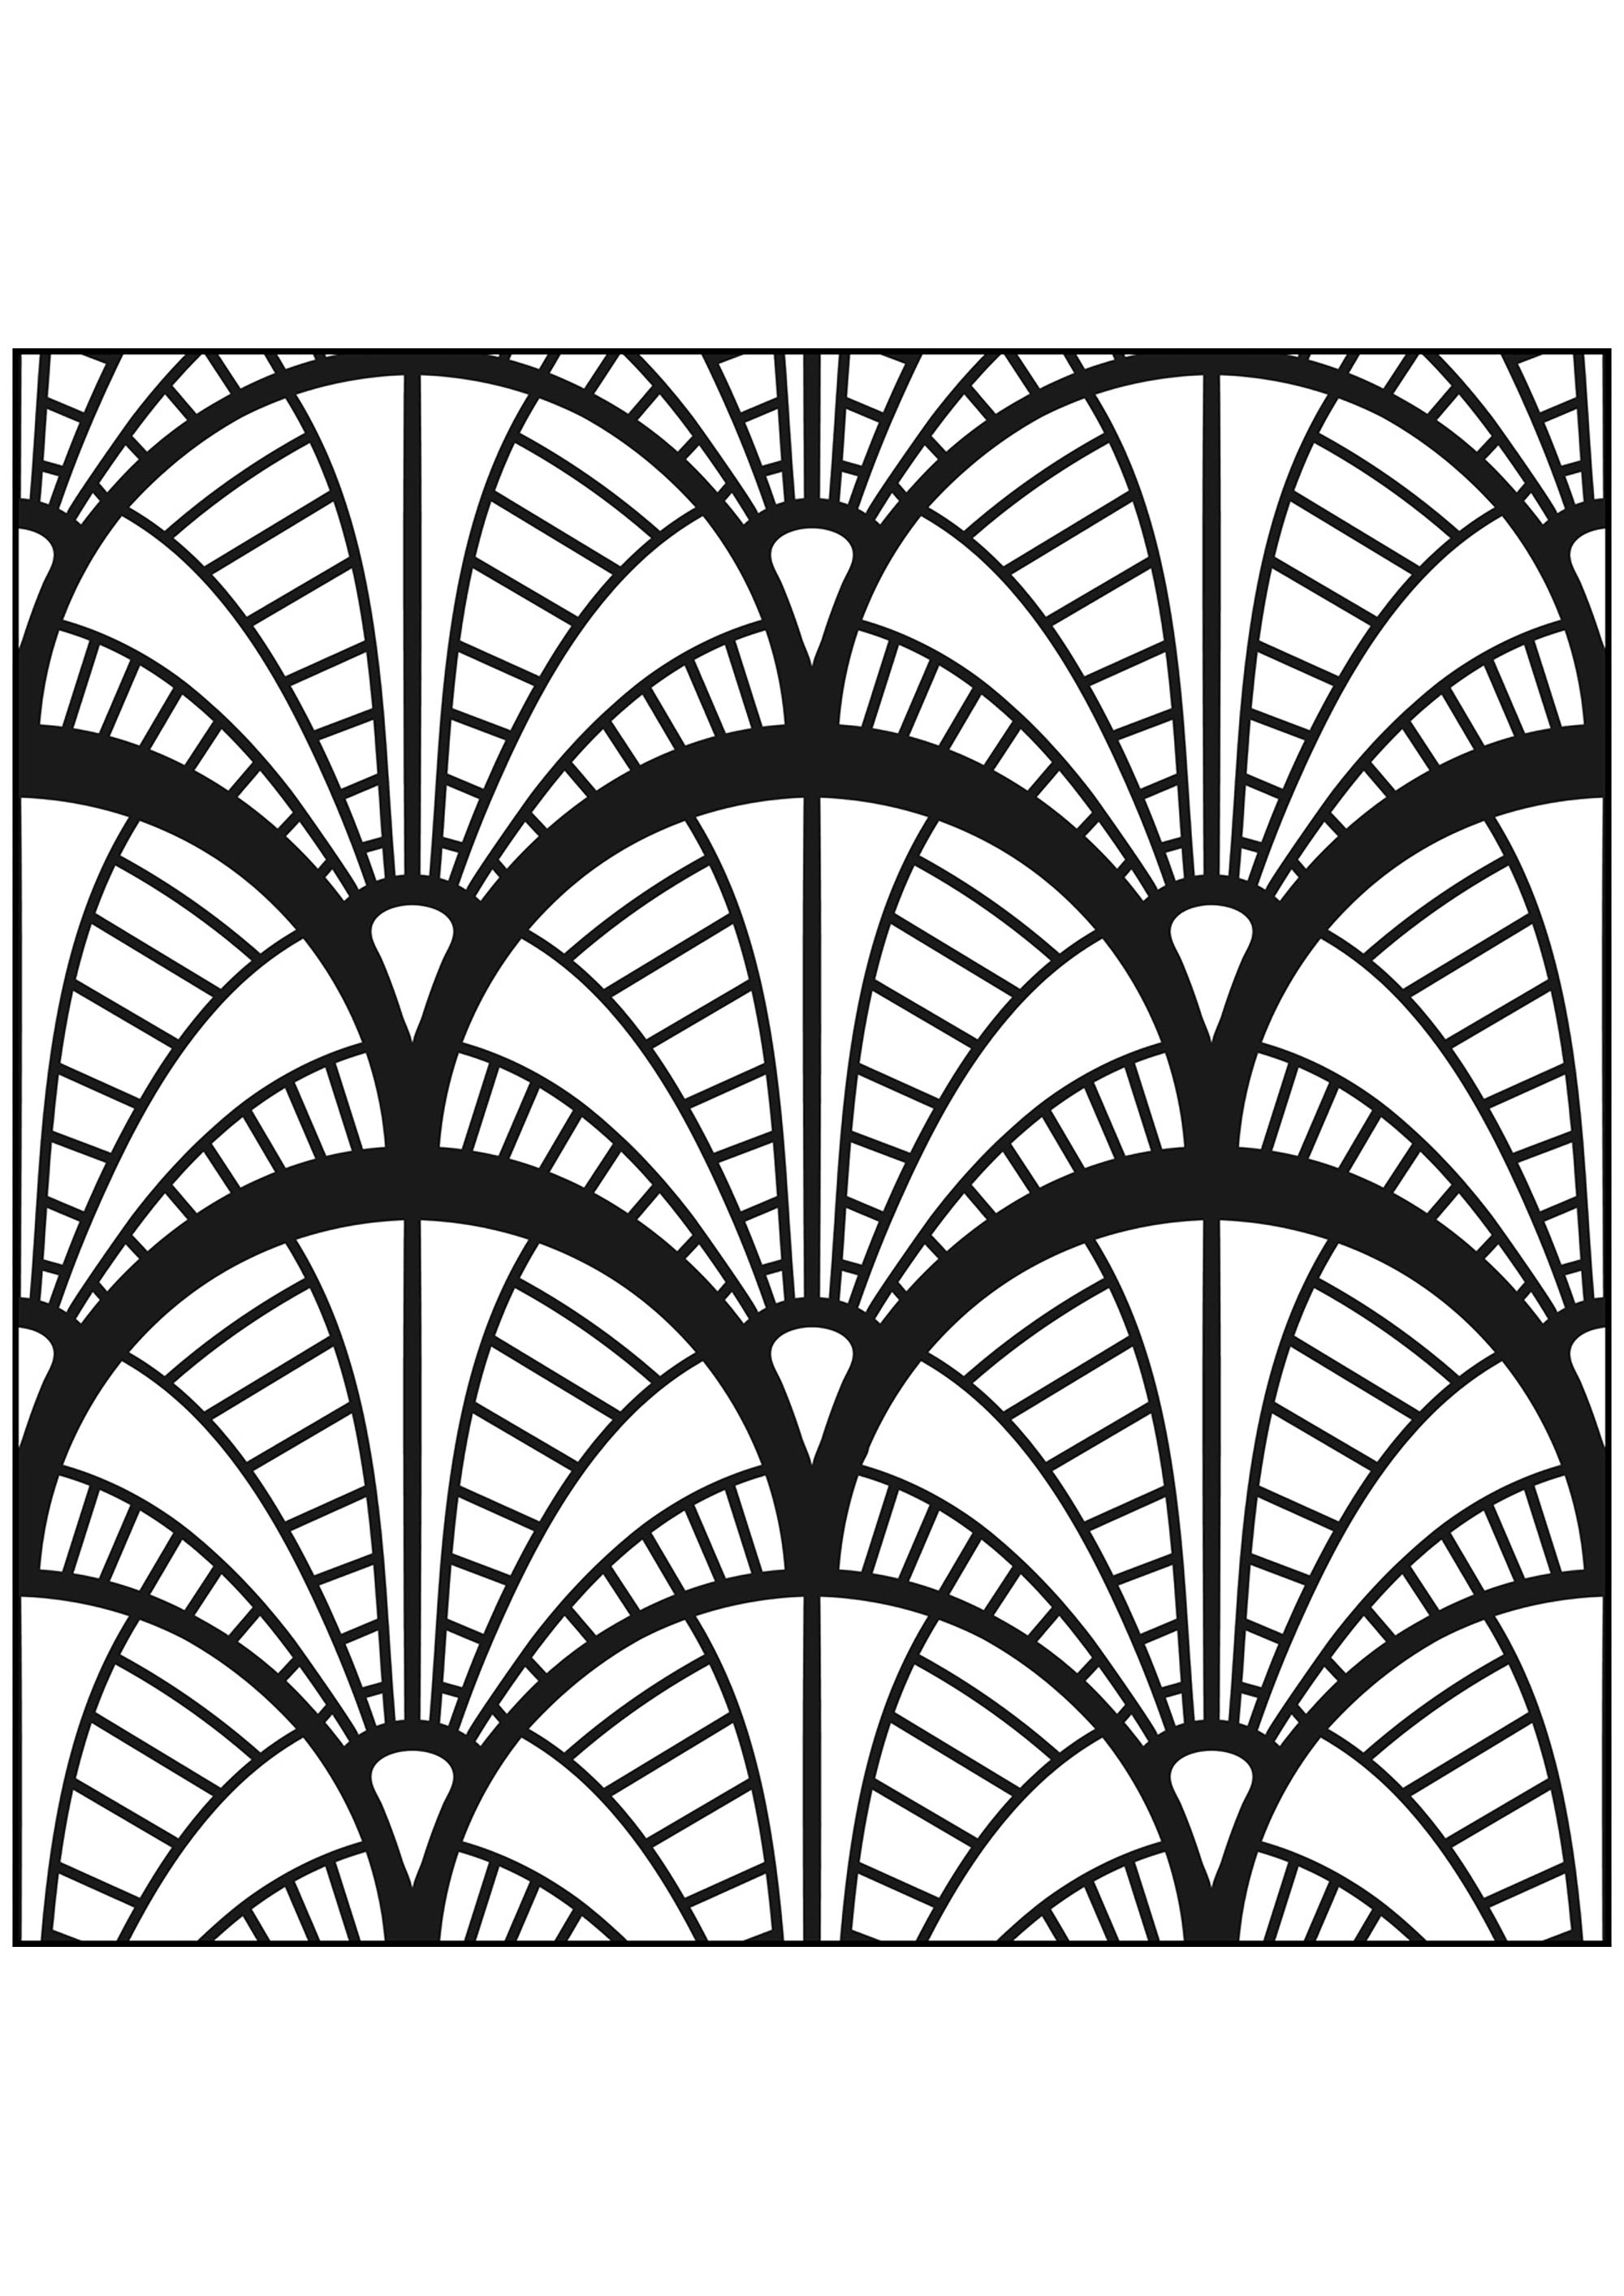 Motifs Art Deco inspirés du Chrysler Building de New York. Plongez dans le New York des années 30 avec ce beau coloraige, Source : 123rf   Artiste : realwebicons